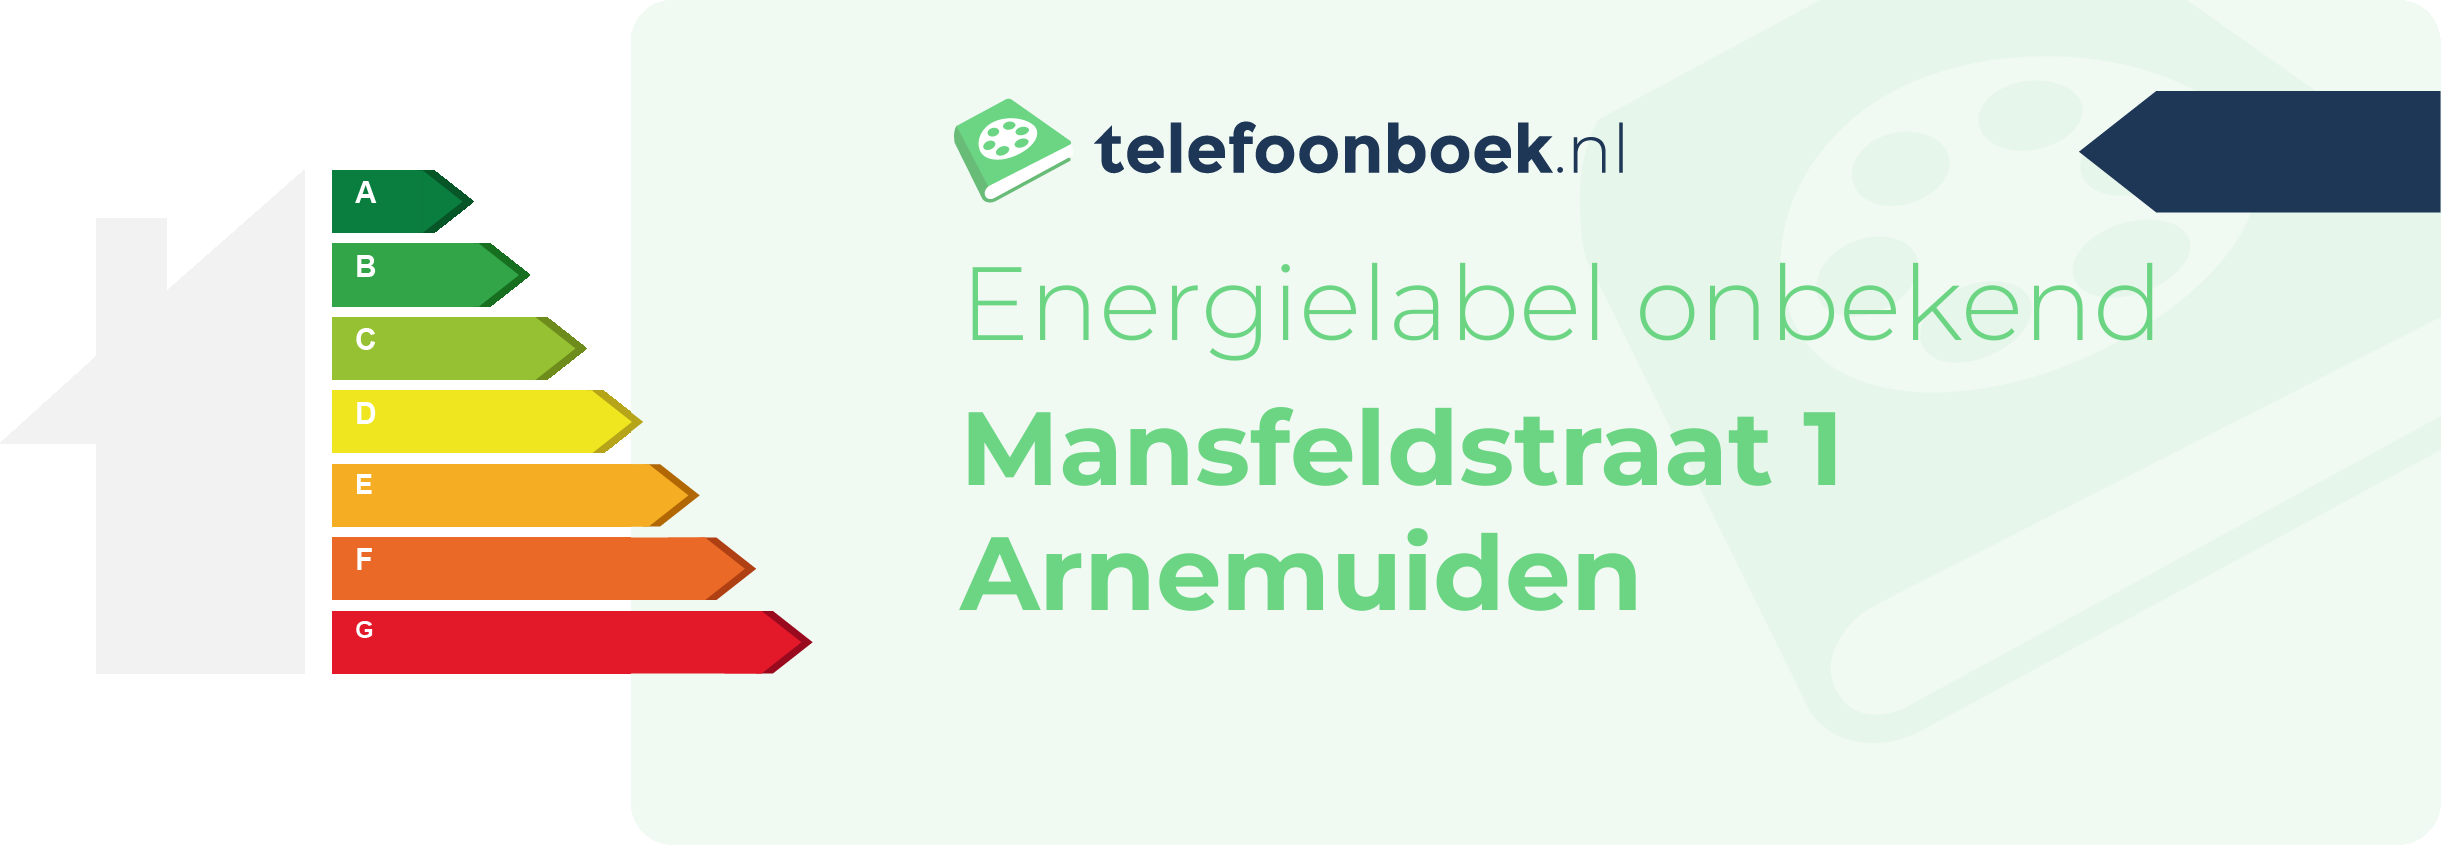 Energielabel Mansfeldstraat 1 Arnemuiden